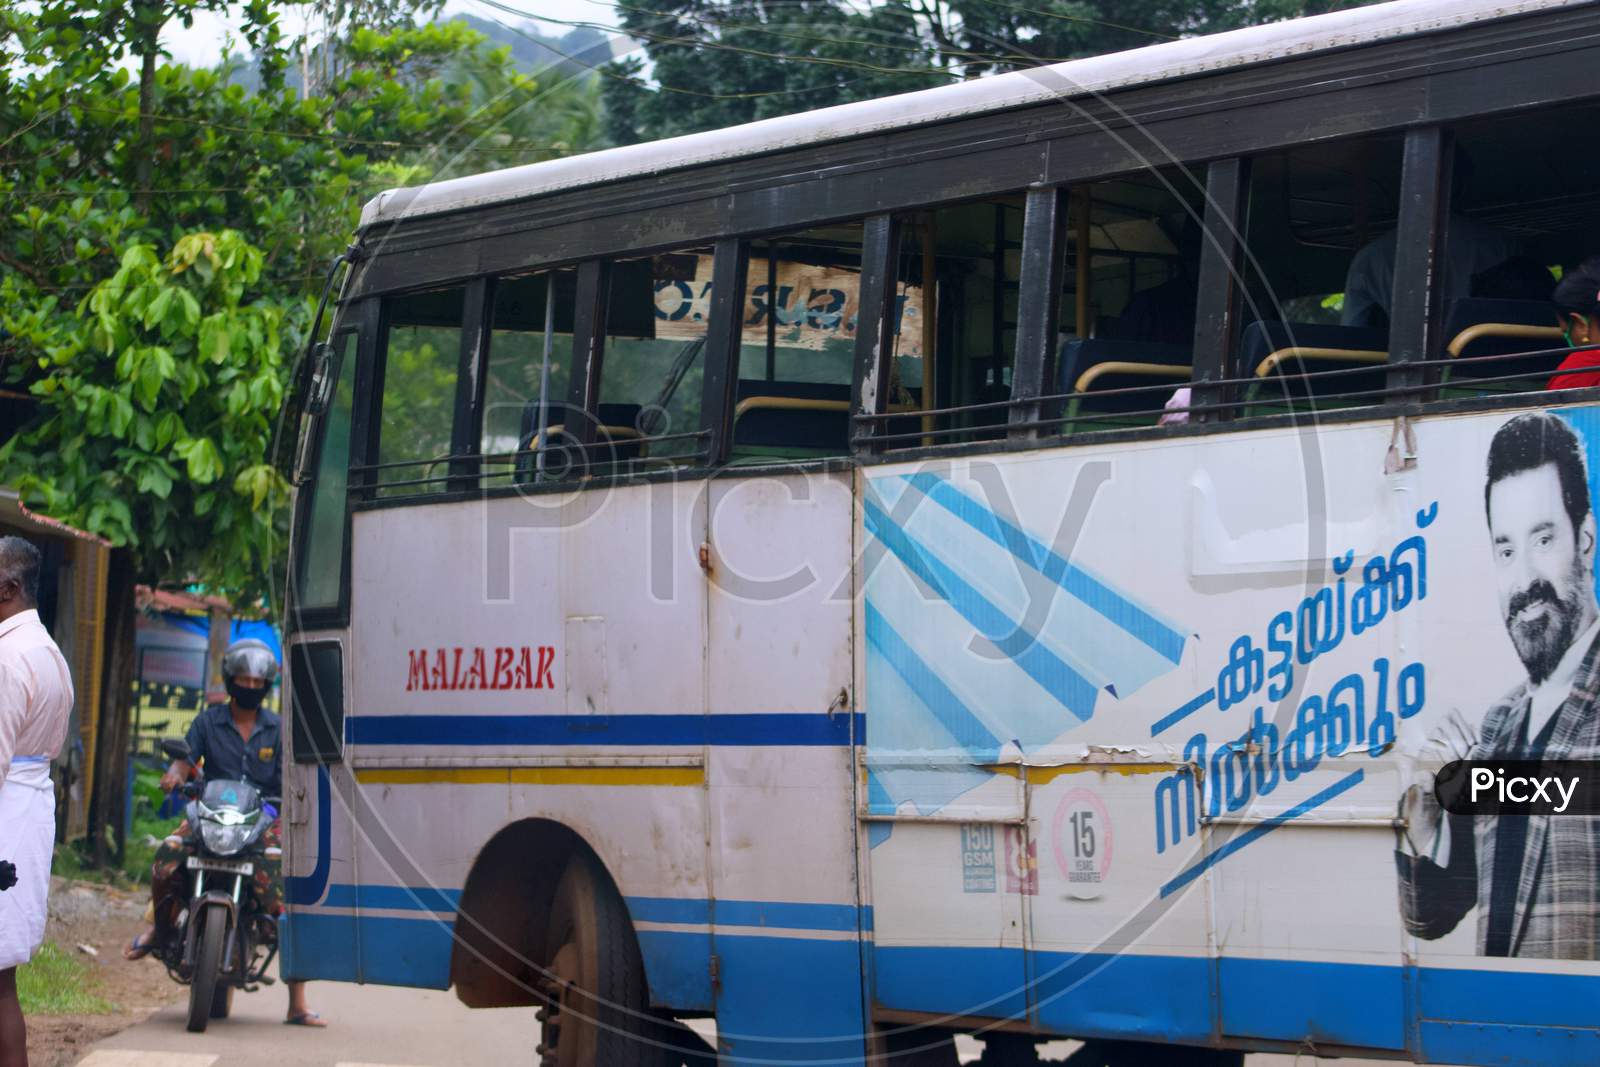 RTC bus in Kerala